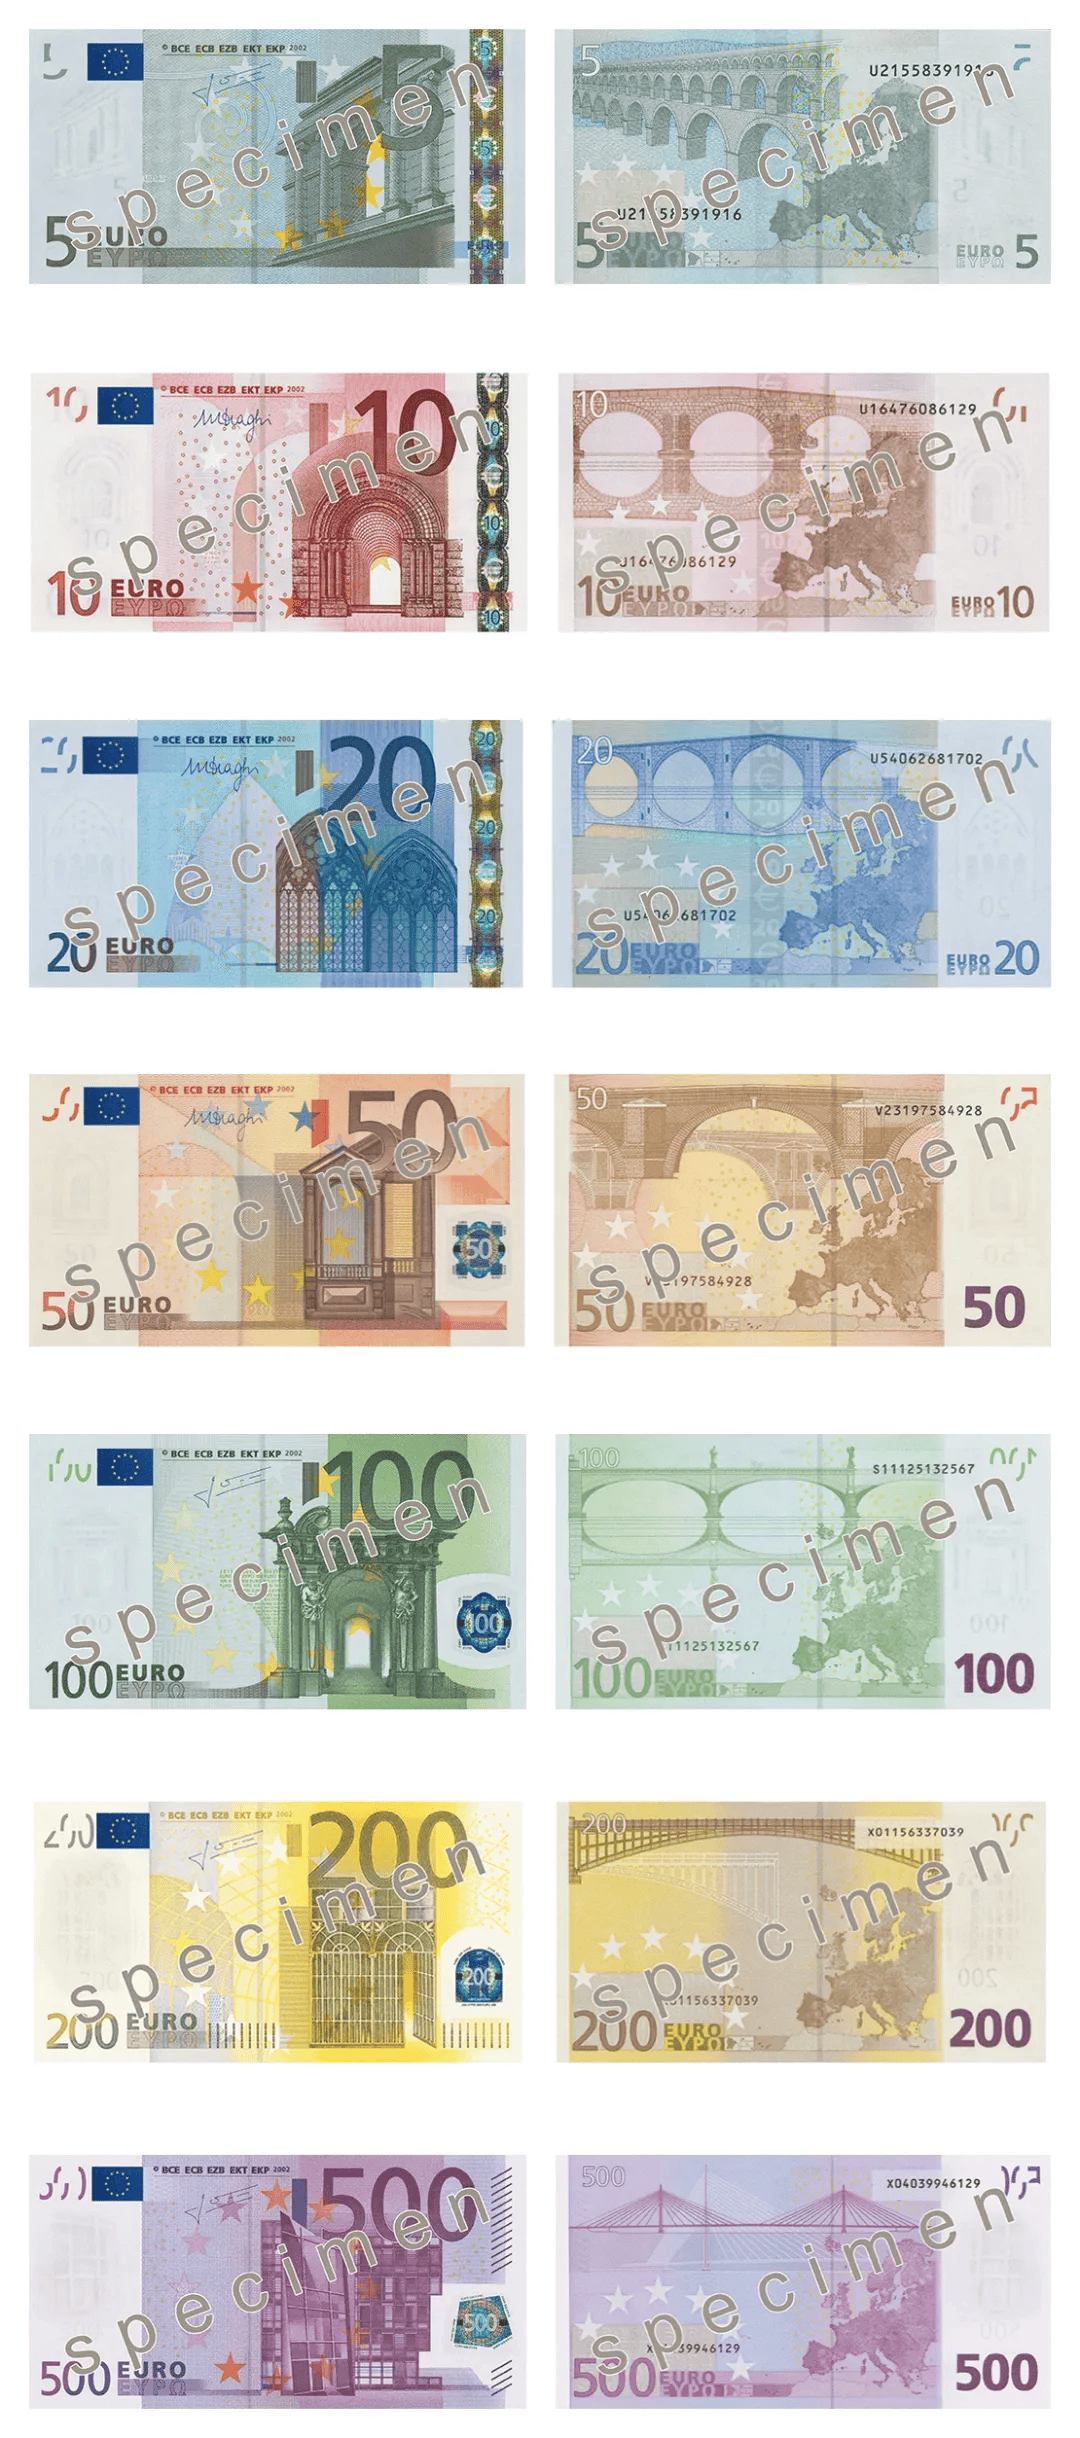 5欧元是多少人民币图片